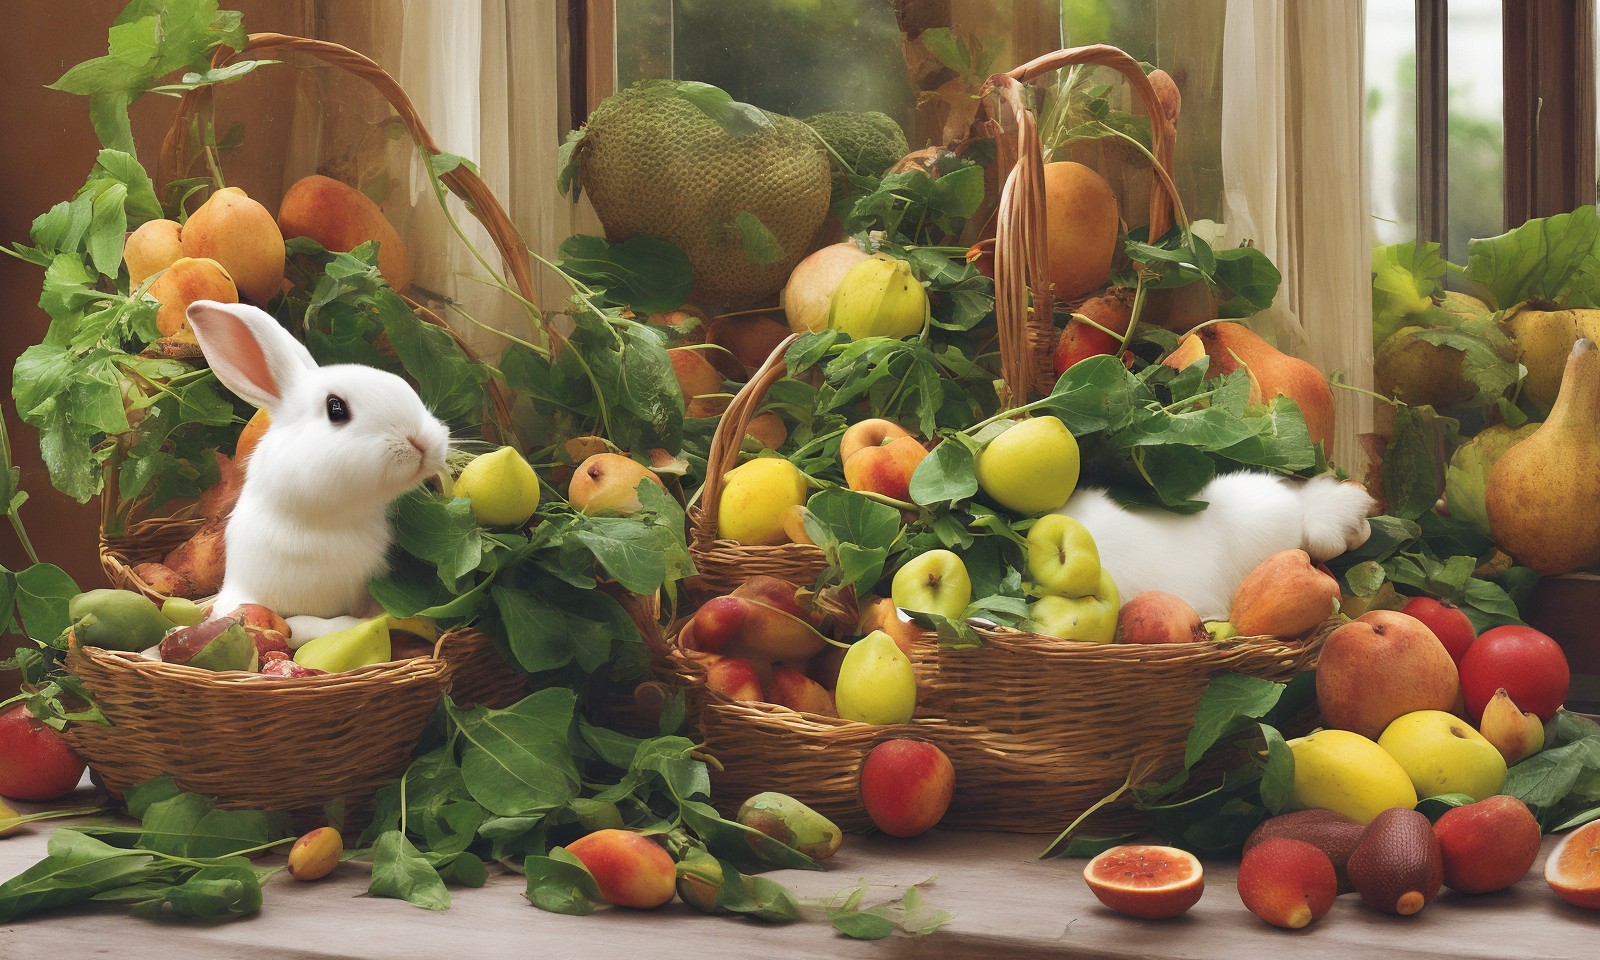 兔子在装满水果的篮子里面 - 手机壁纸图片，壁纸图片